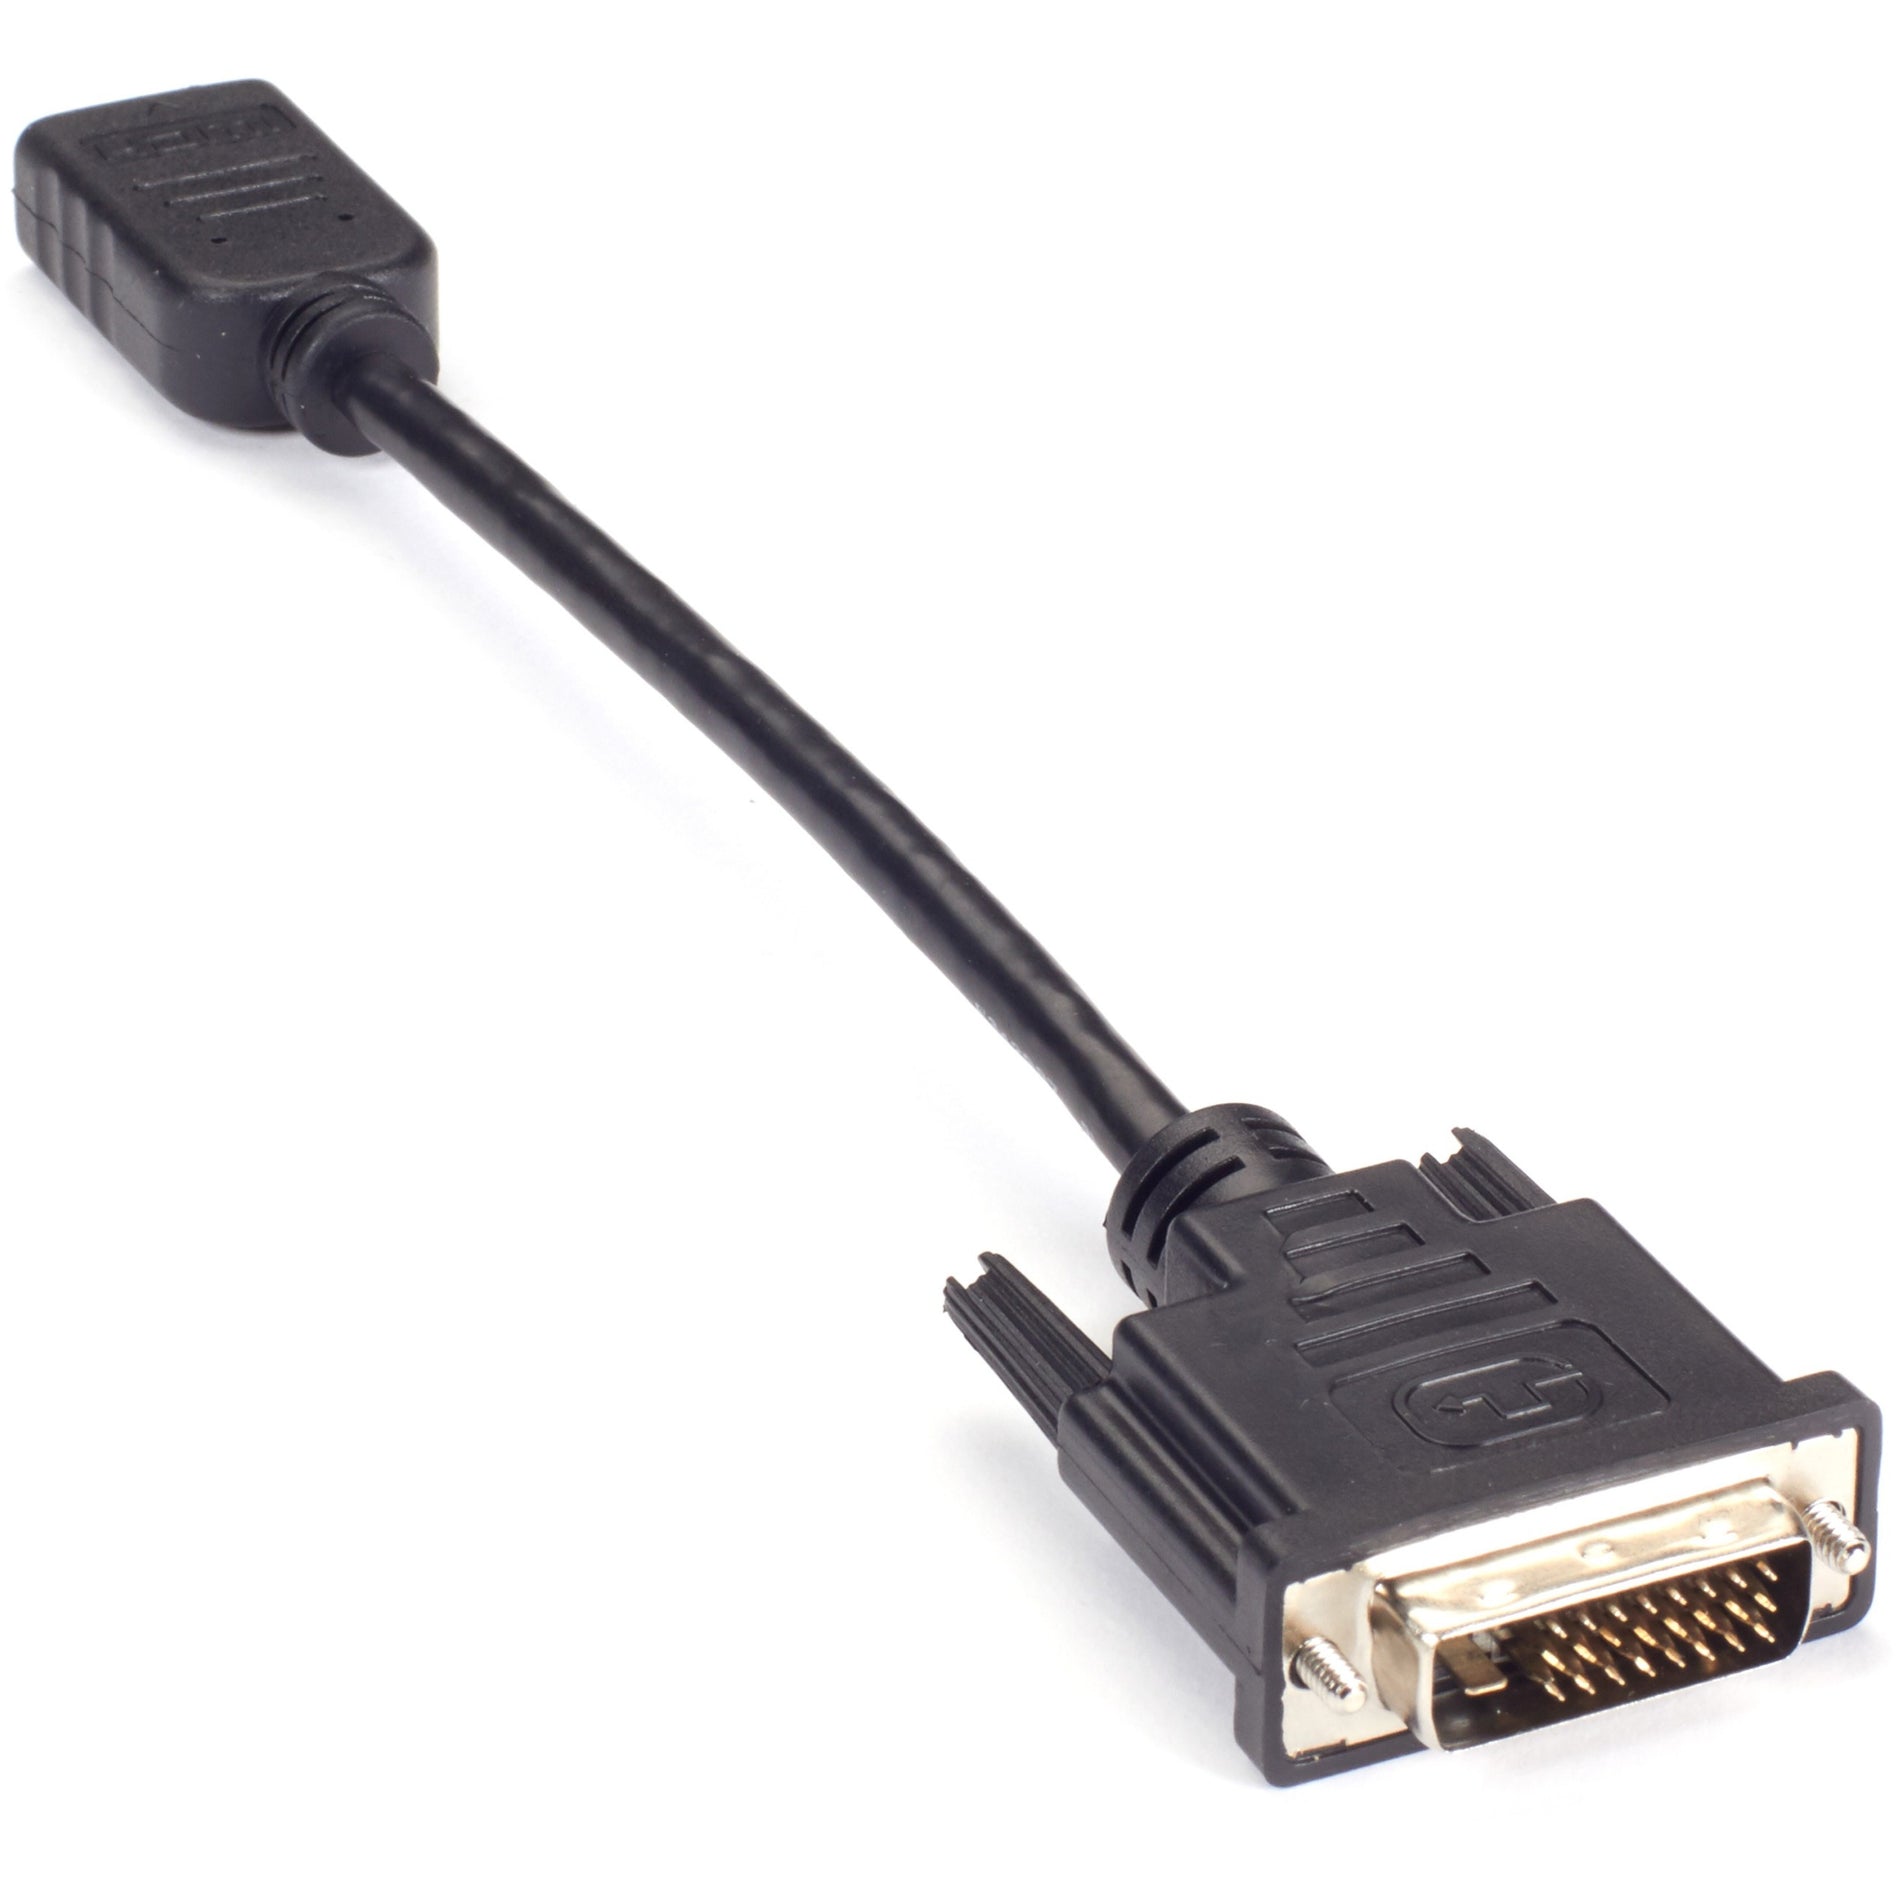 Marca: Caja Negra Adaptador de Video VA-DVID-HDMI - DVI-D Macho a HDMI Hembra Resistente al Estrés Alivio de Tensión Longitud del Cable de 8" Resolución Soportada de 1920 x 1080